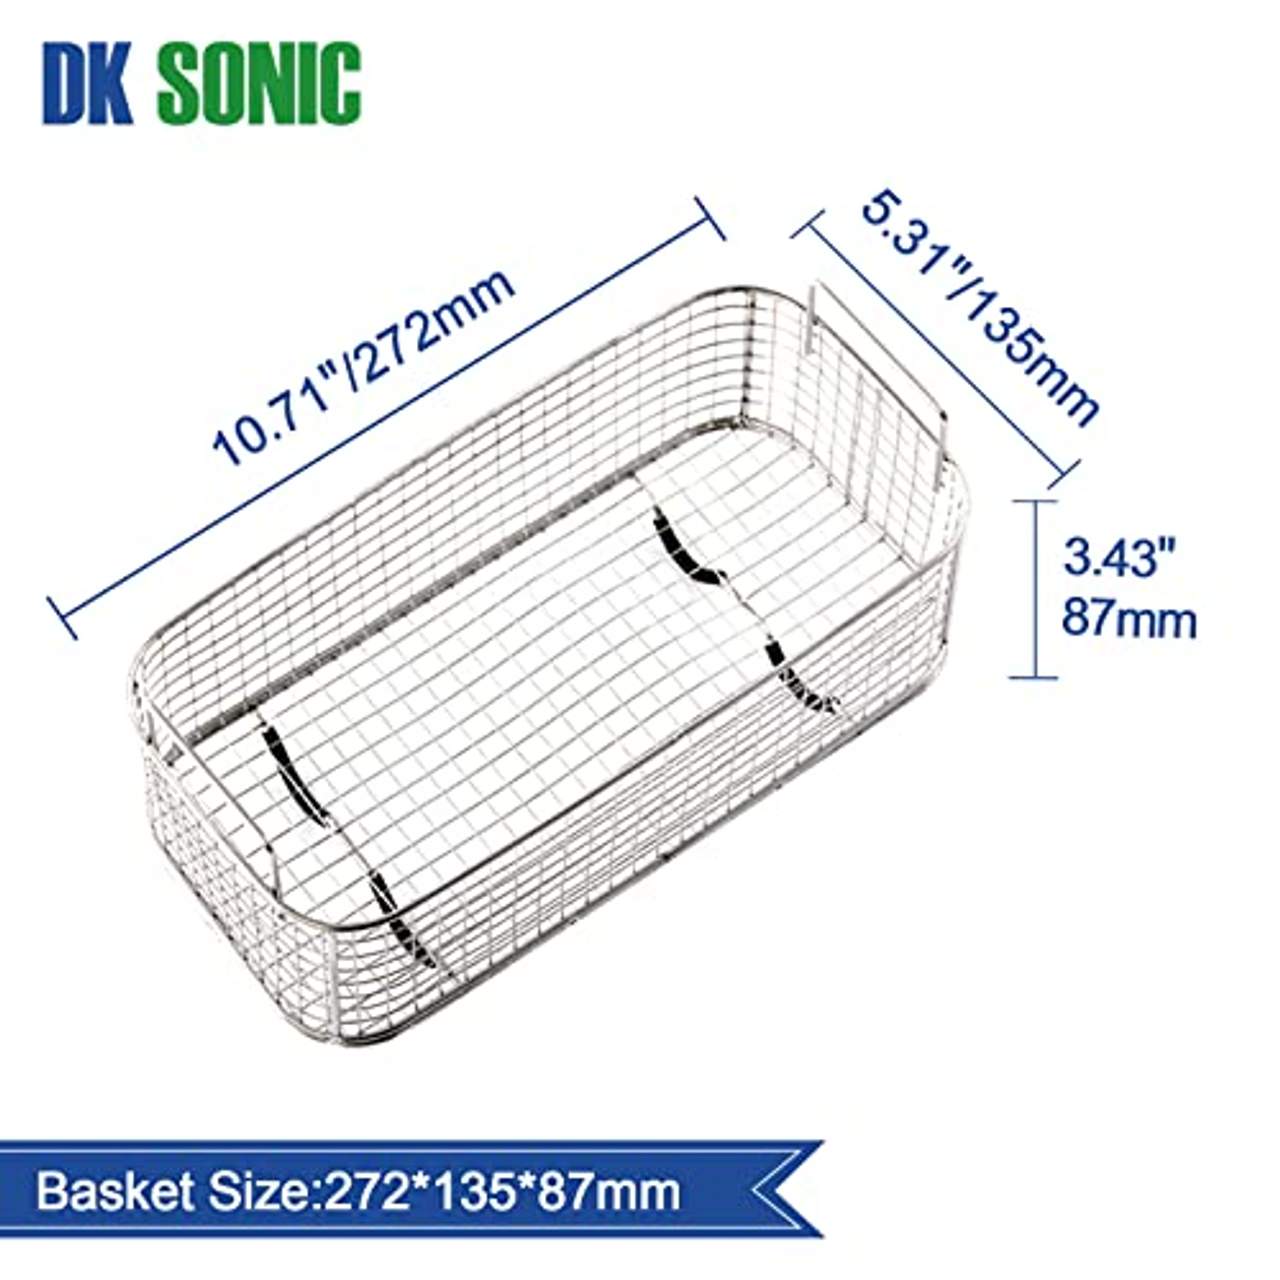 DK SONIC 3LUltraschallreiniger mit Semiwave und Fullwave Modi für Reinigung von Schmuck Uhren Gläser